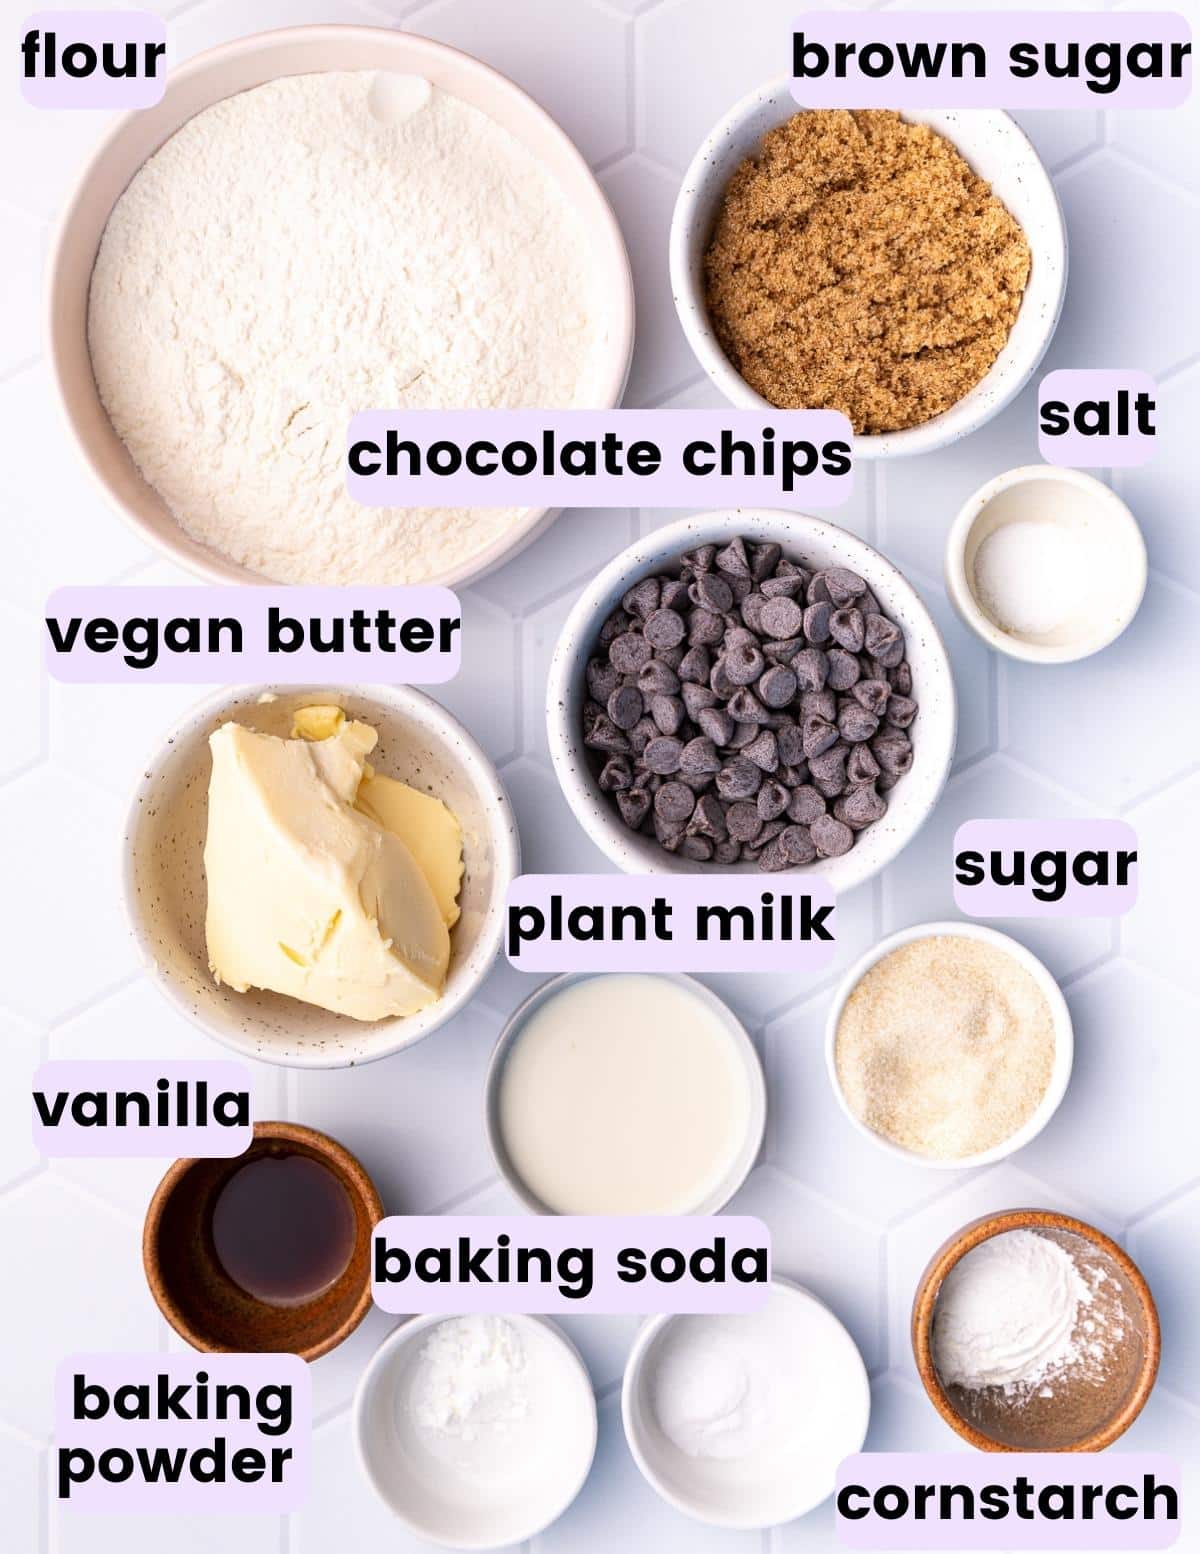 flour, brown sugar, salt, vegan butter, chocolate chips, sugar, plant milk, vanilla, baking soda, baking powder,  cornstarch and plant milk 